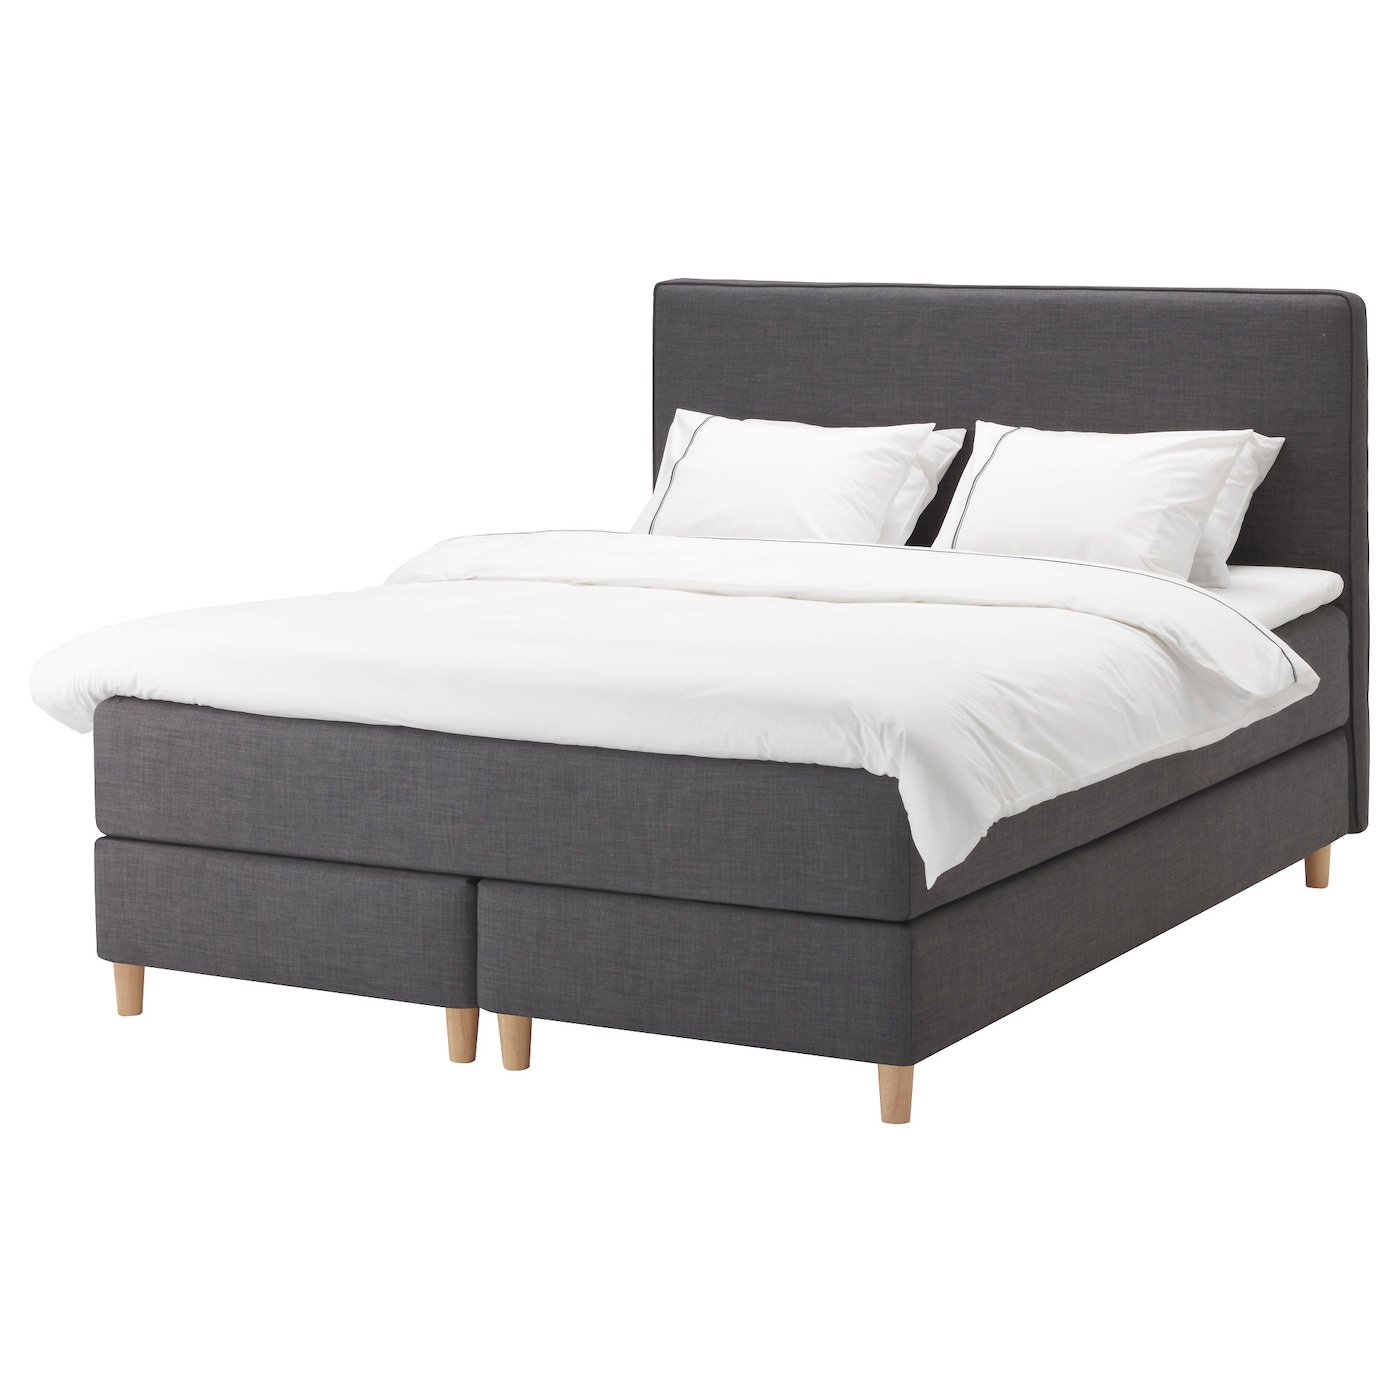 Континентальная кровать - IKEA DUNVIK, 200х160 см, жесткий матрас, темно-серый, ДУНВИК ИКЕА